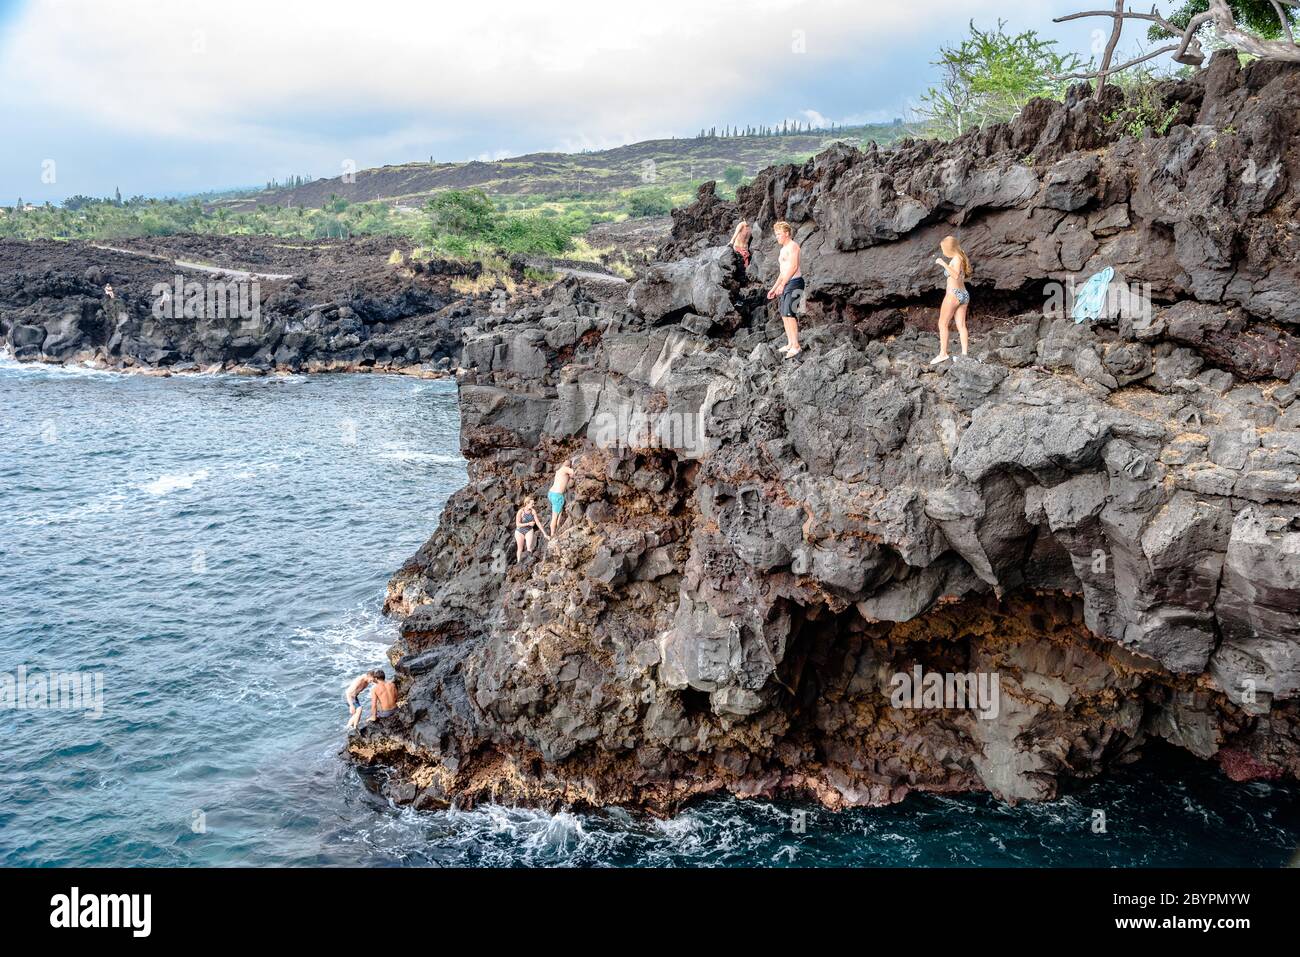 Les gens sautent sur la falaise dans la baie de Keauhou à la fin du monde sur la Grande île d'Hawaï Banque D'Images